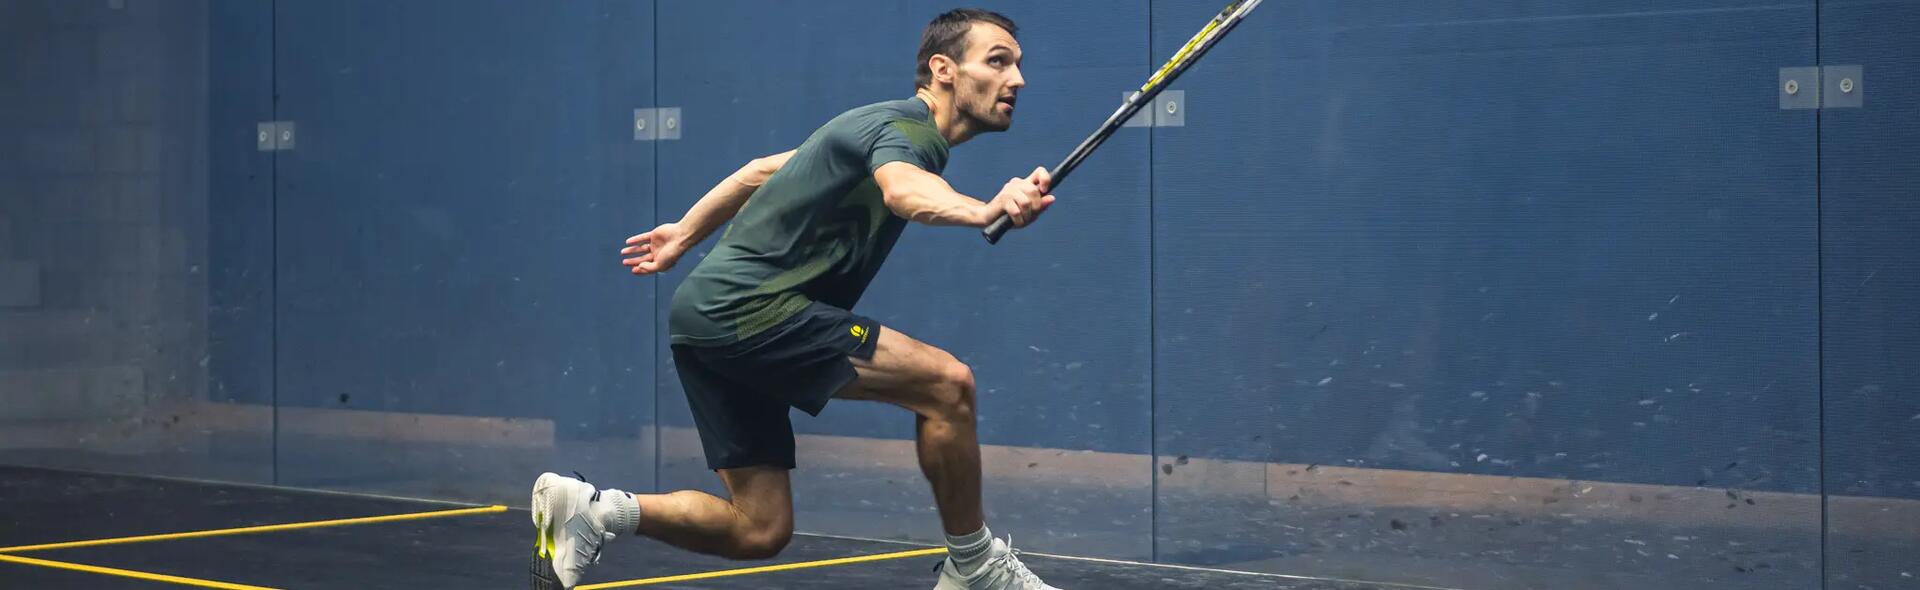 Man playing squash